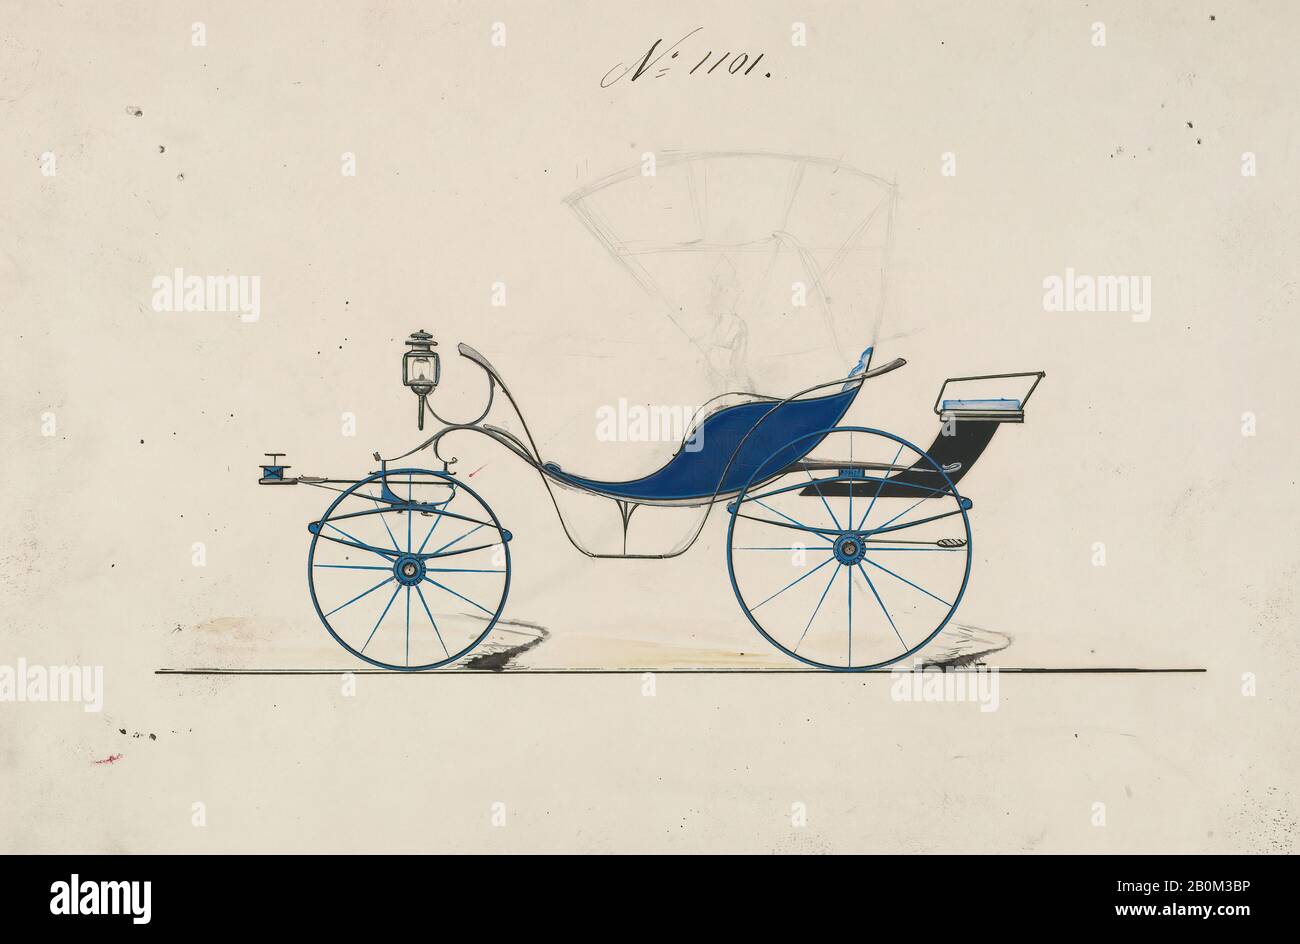 Brewster & Co., Design for Driving Phaeton, no 1101, Brewster & Co. (Américain, New York), Ca. 1870, Graphite, encre noire et stylo, feuille : 6 5/16 x 9 1/4 po. (16 x 23,5 cm), mises en plan Banque D'Images